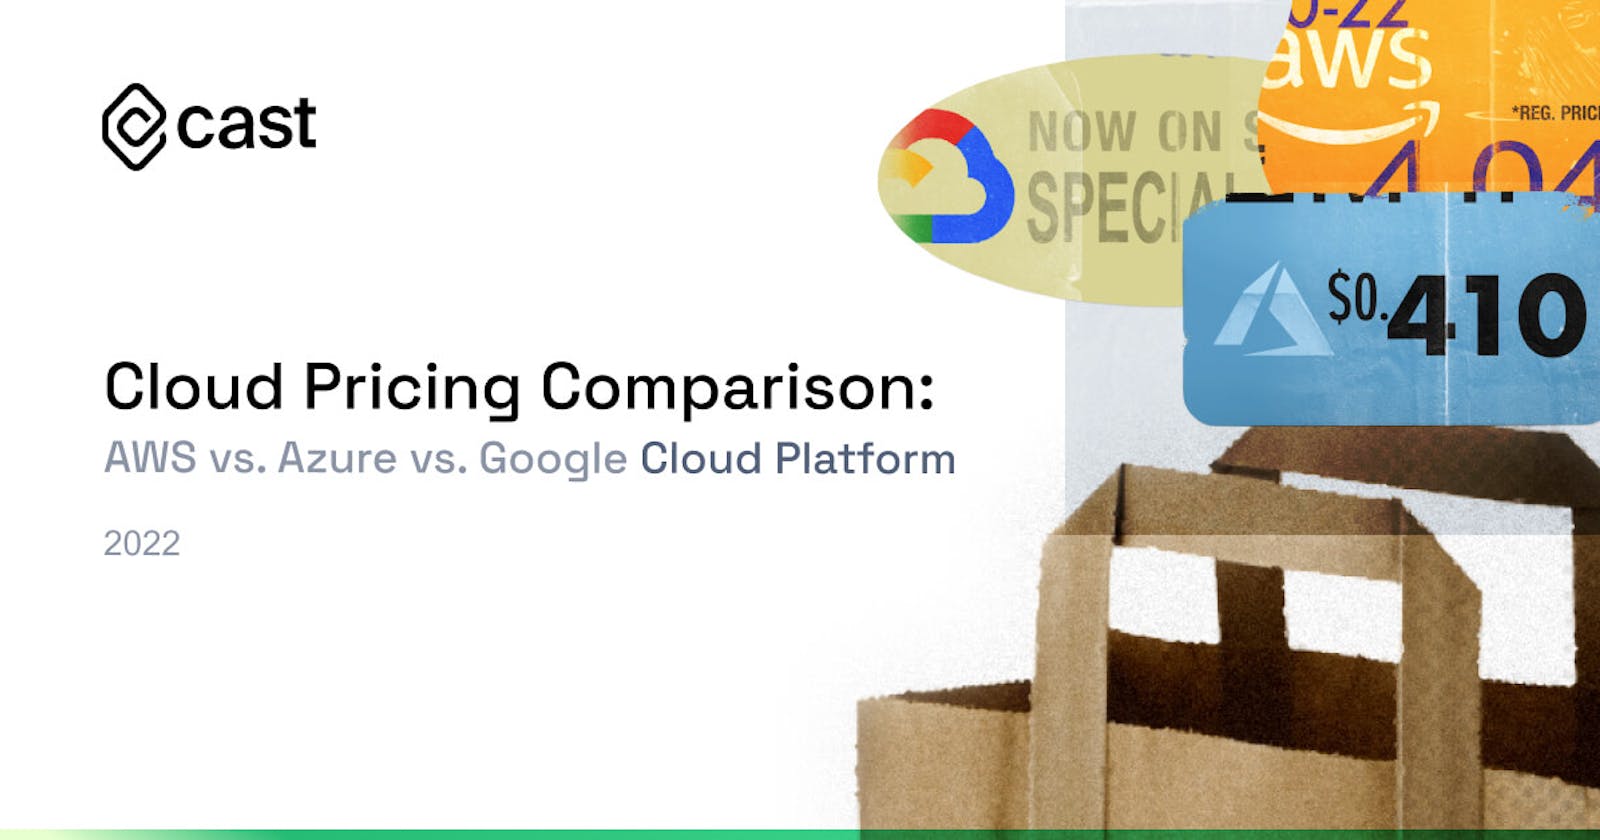 Cloud Pricing Comparison: AWS vs. Azure vs. Google Cloud Platform in 2022